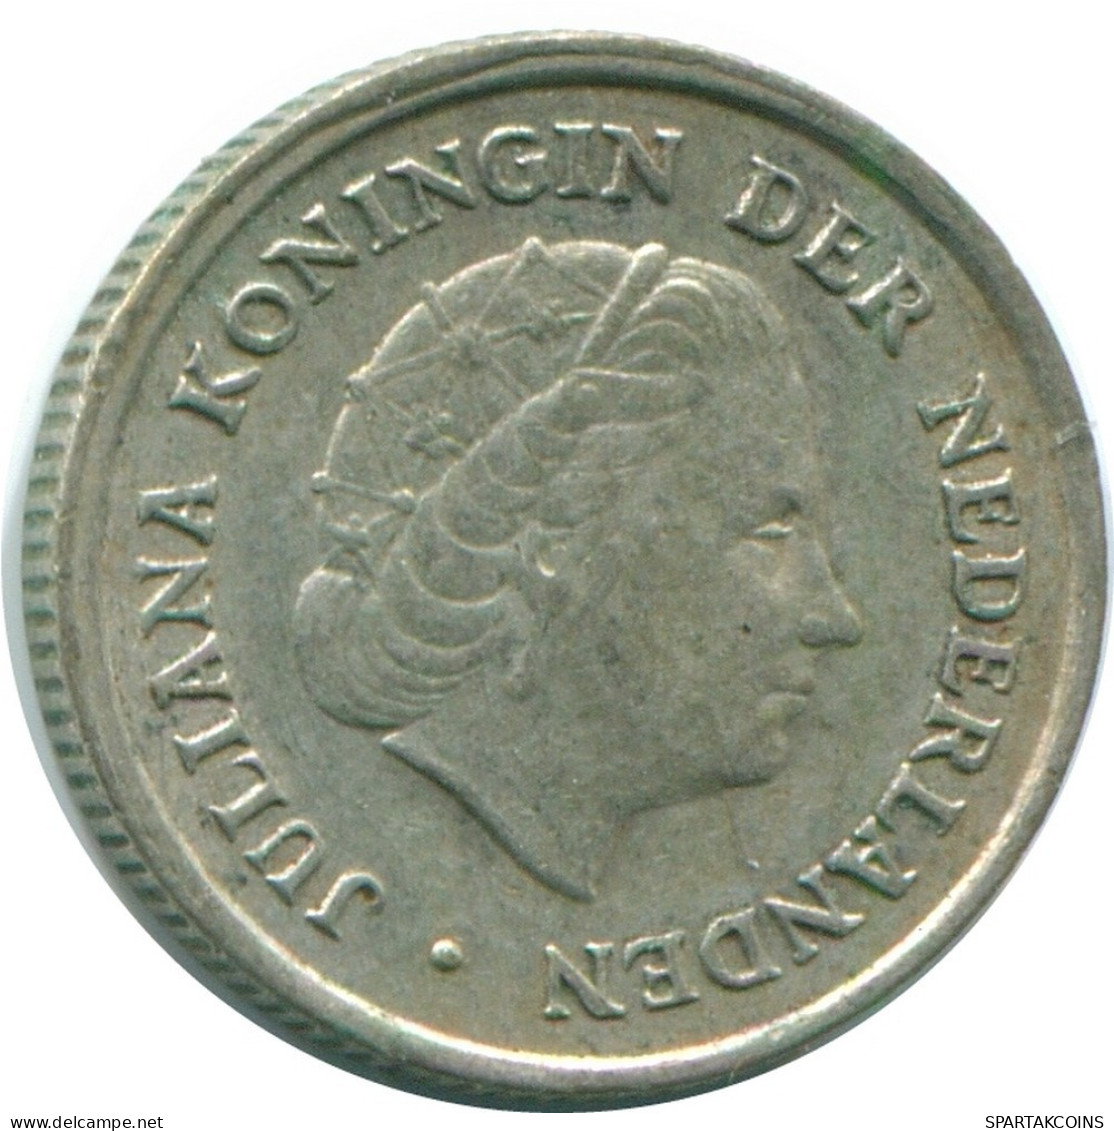 1/10 GULDEN 1970 NIEDERLÄNDISCHE ANTILLEN SILBER Koloniale Münze #NL13113.3.D.A - Antillas Neerlandesas